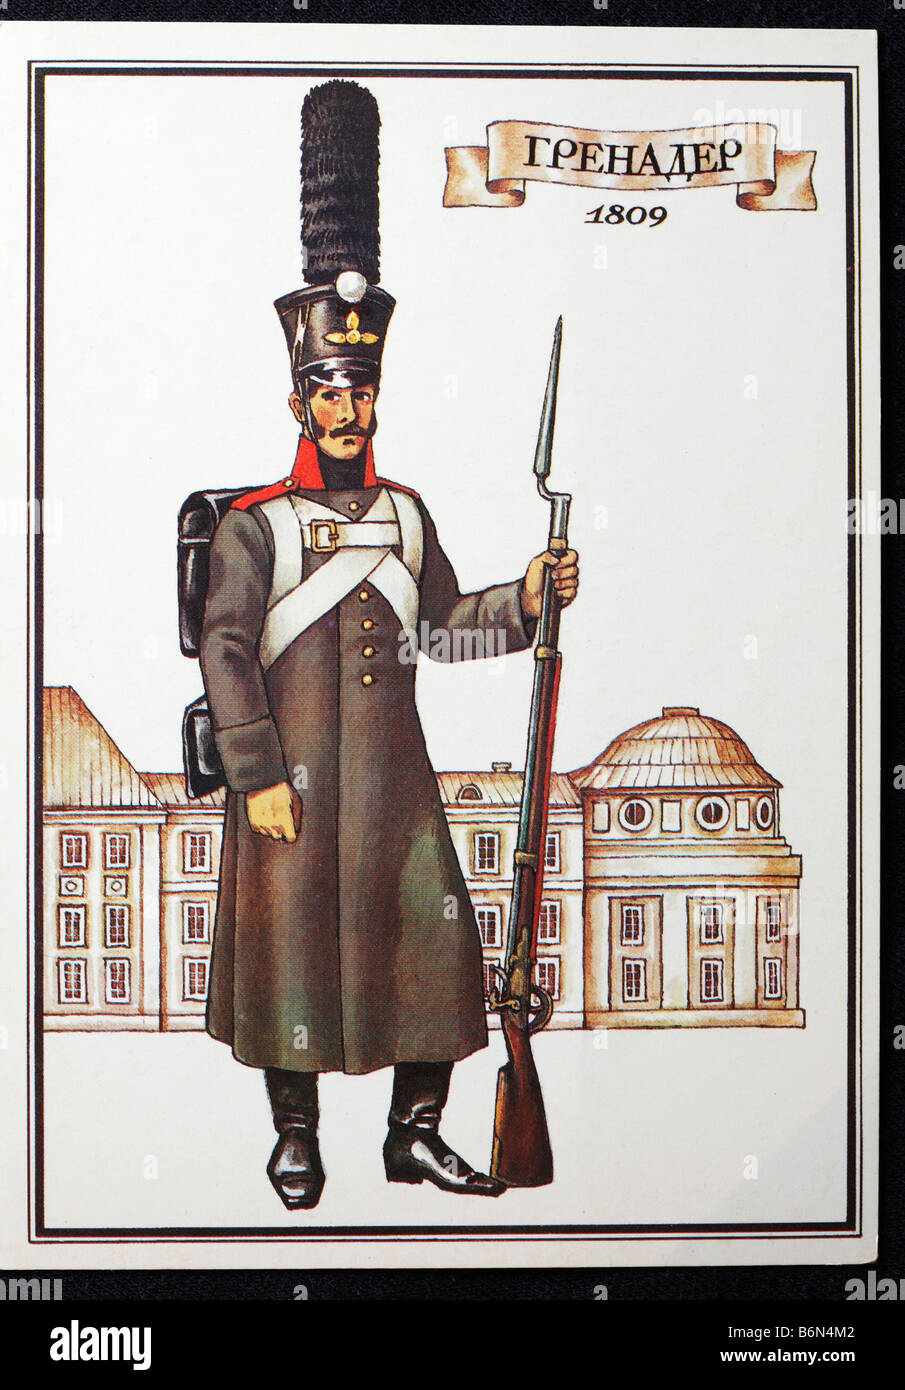 L'uniforme de soldats du régiment de grenadiers de l'armée russe (1809), carte postale, URSS, 1986 Banque D'Images